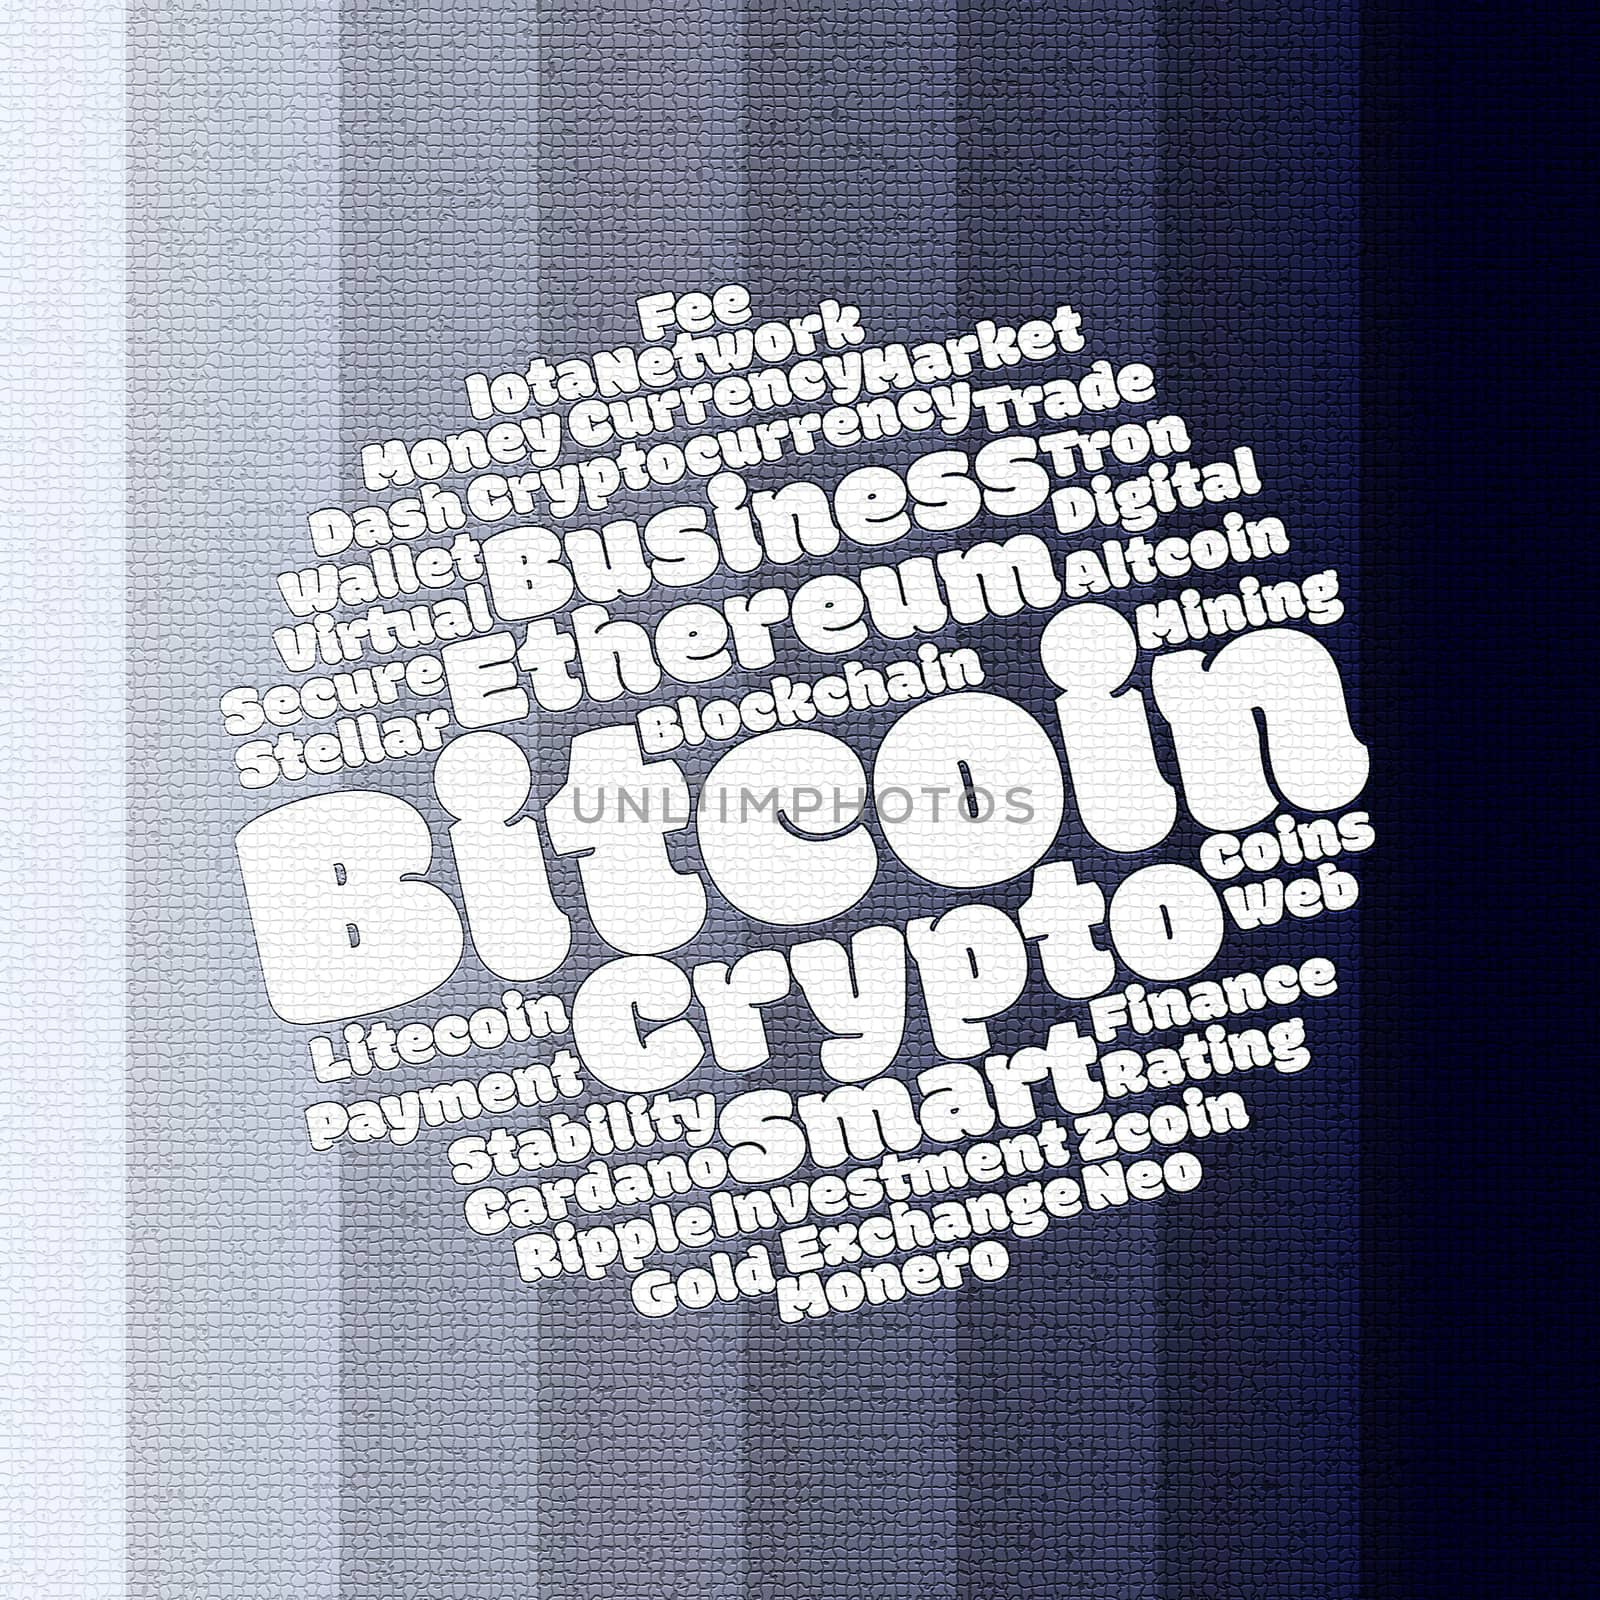 Bitcoin wordcloud concept by eenevski